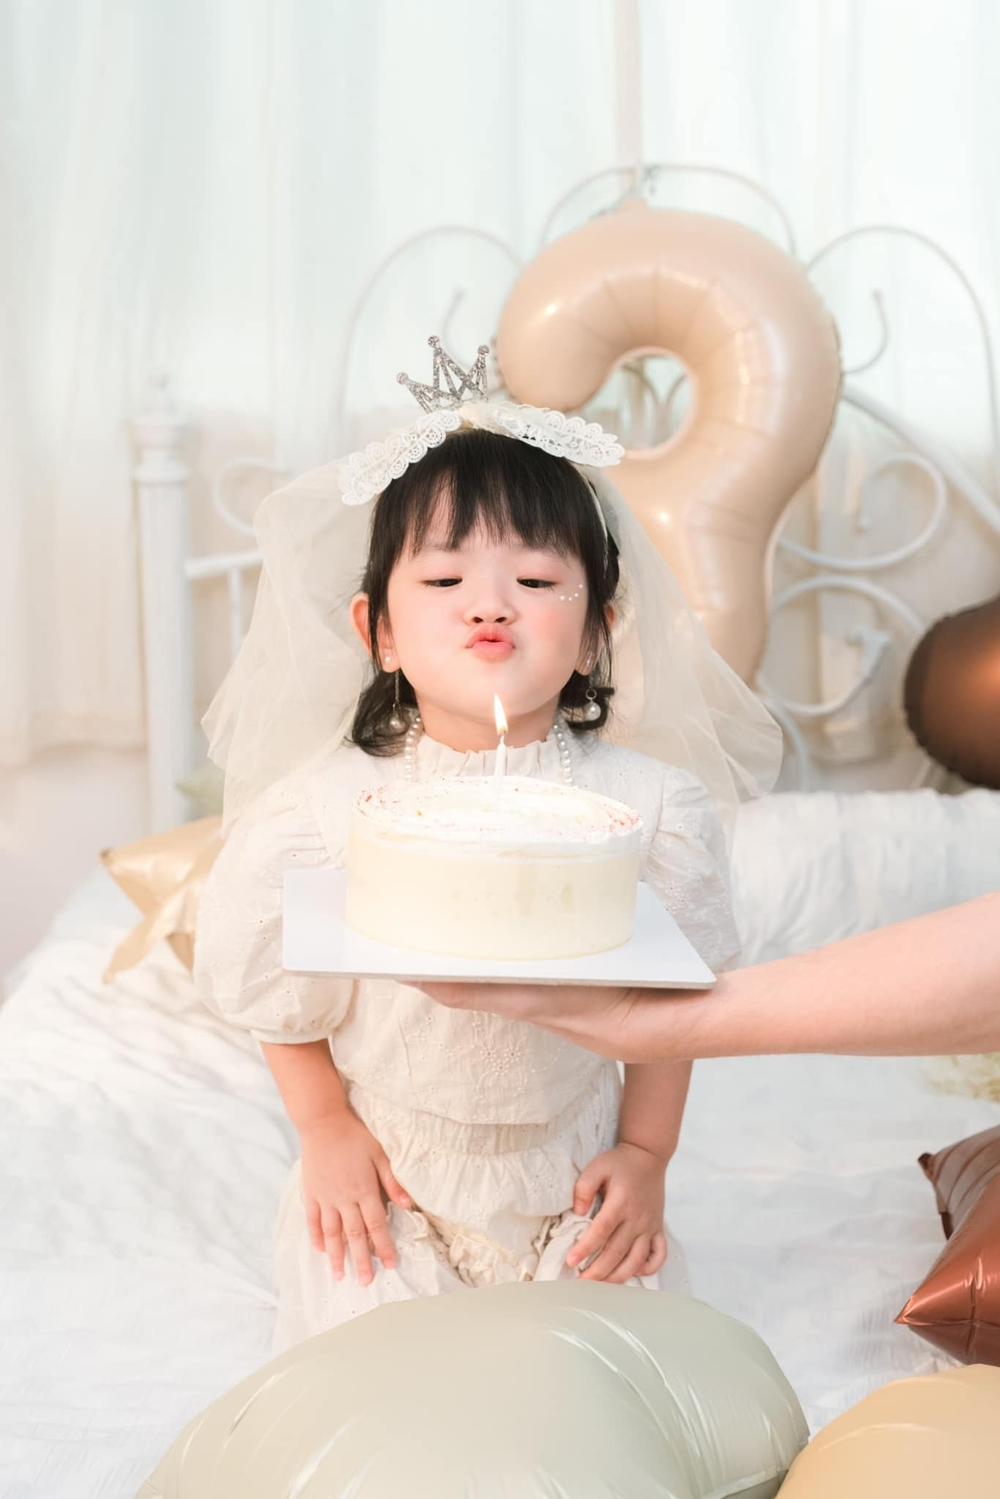 Con gái Trương Mỹ Nhân - Phí Ngọc Hưng được khen như tiểu công chúa, mới 3 tuổi đã bộc lộ tính cách đáng khen - Ảnh 2.